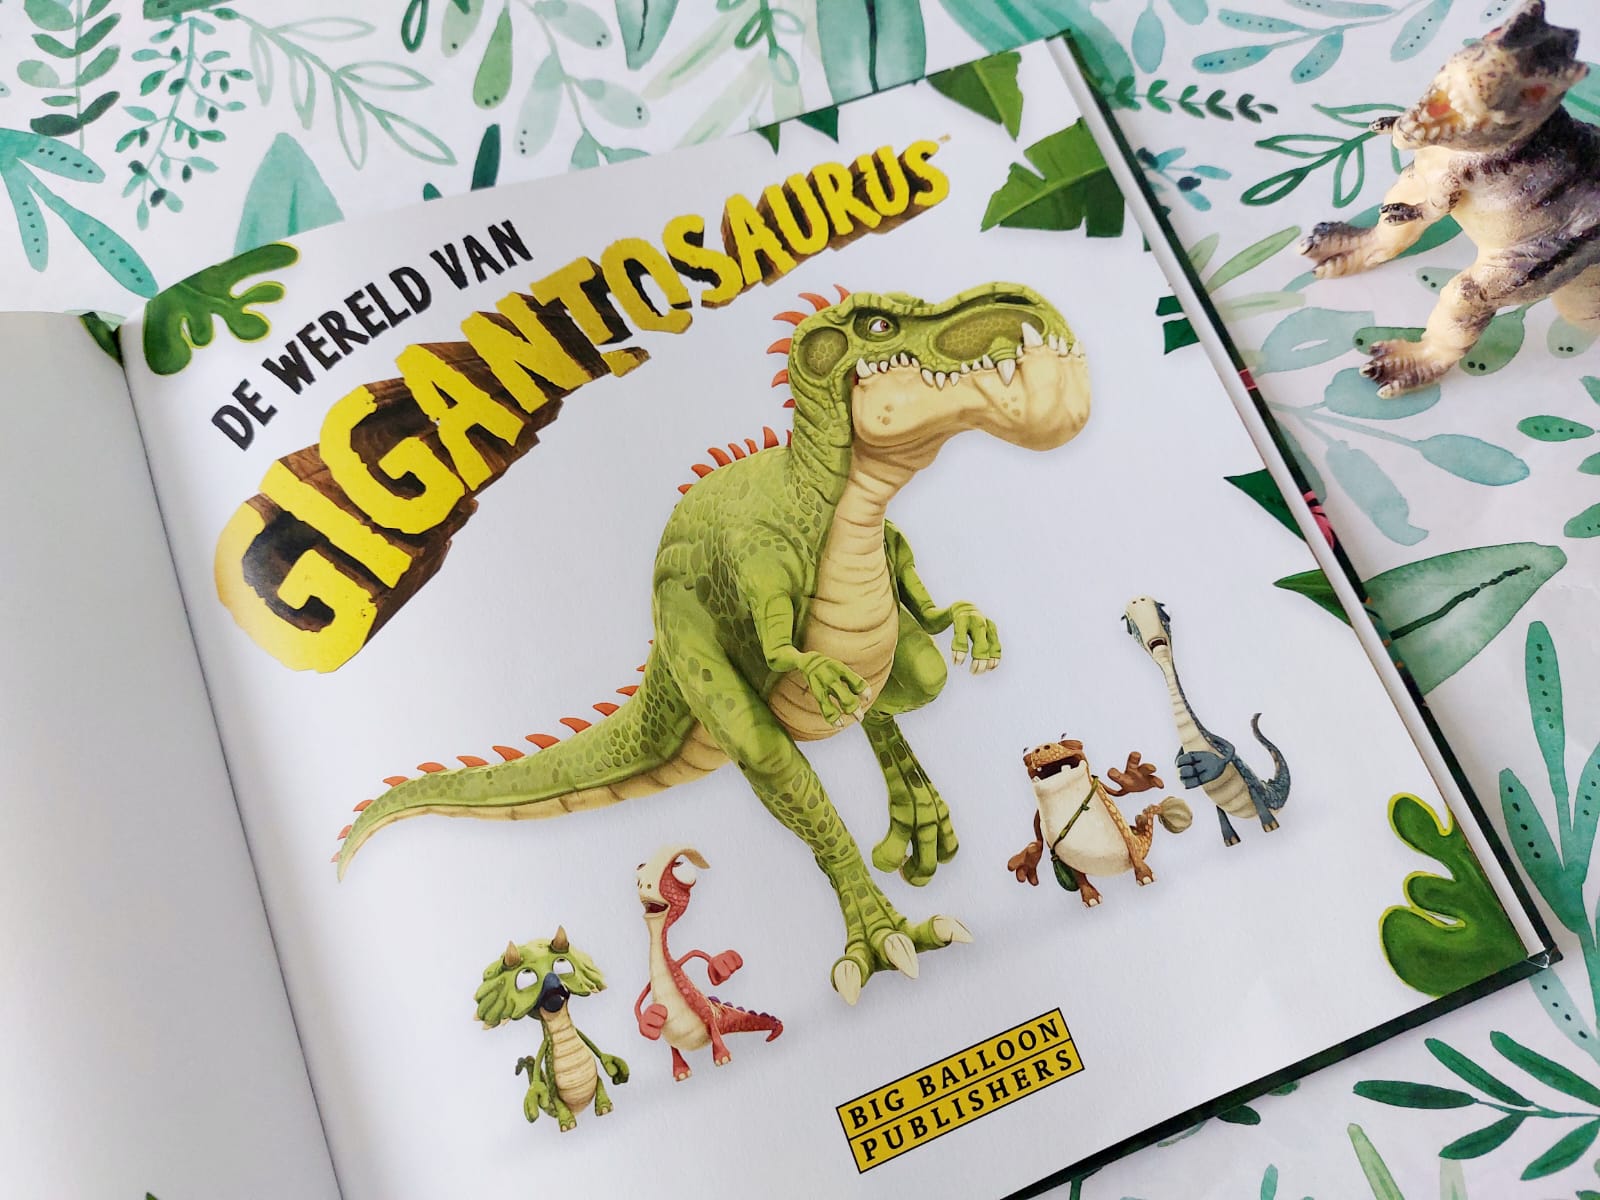 De wereld van Gigantosaurus